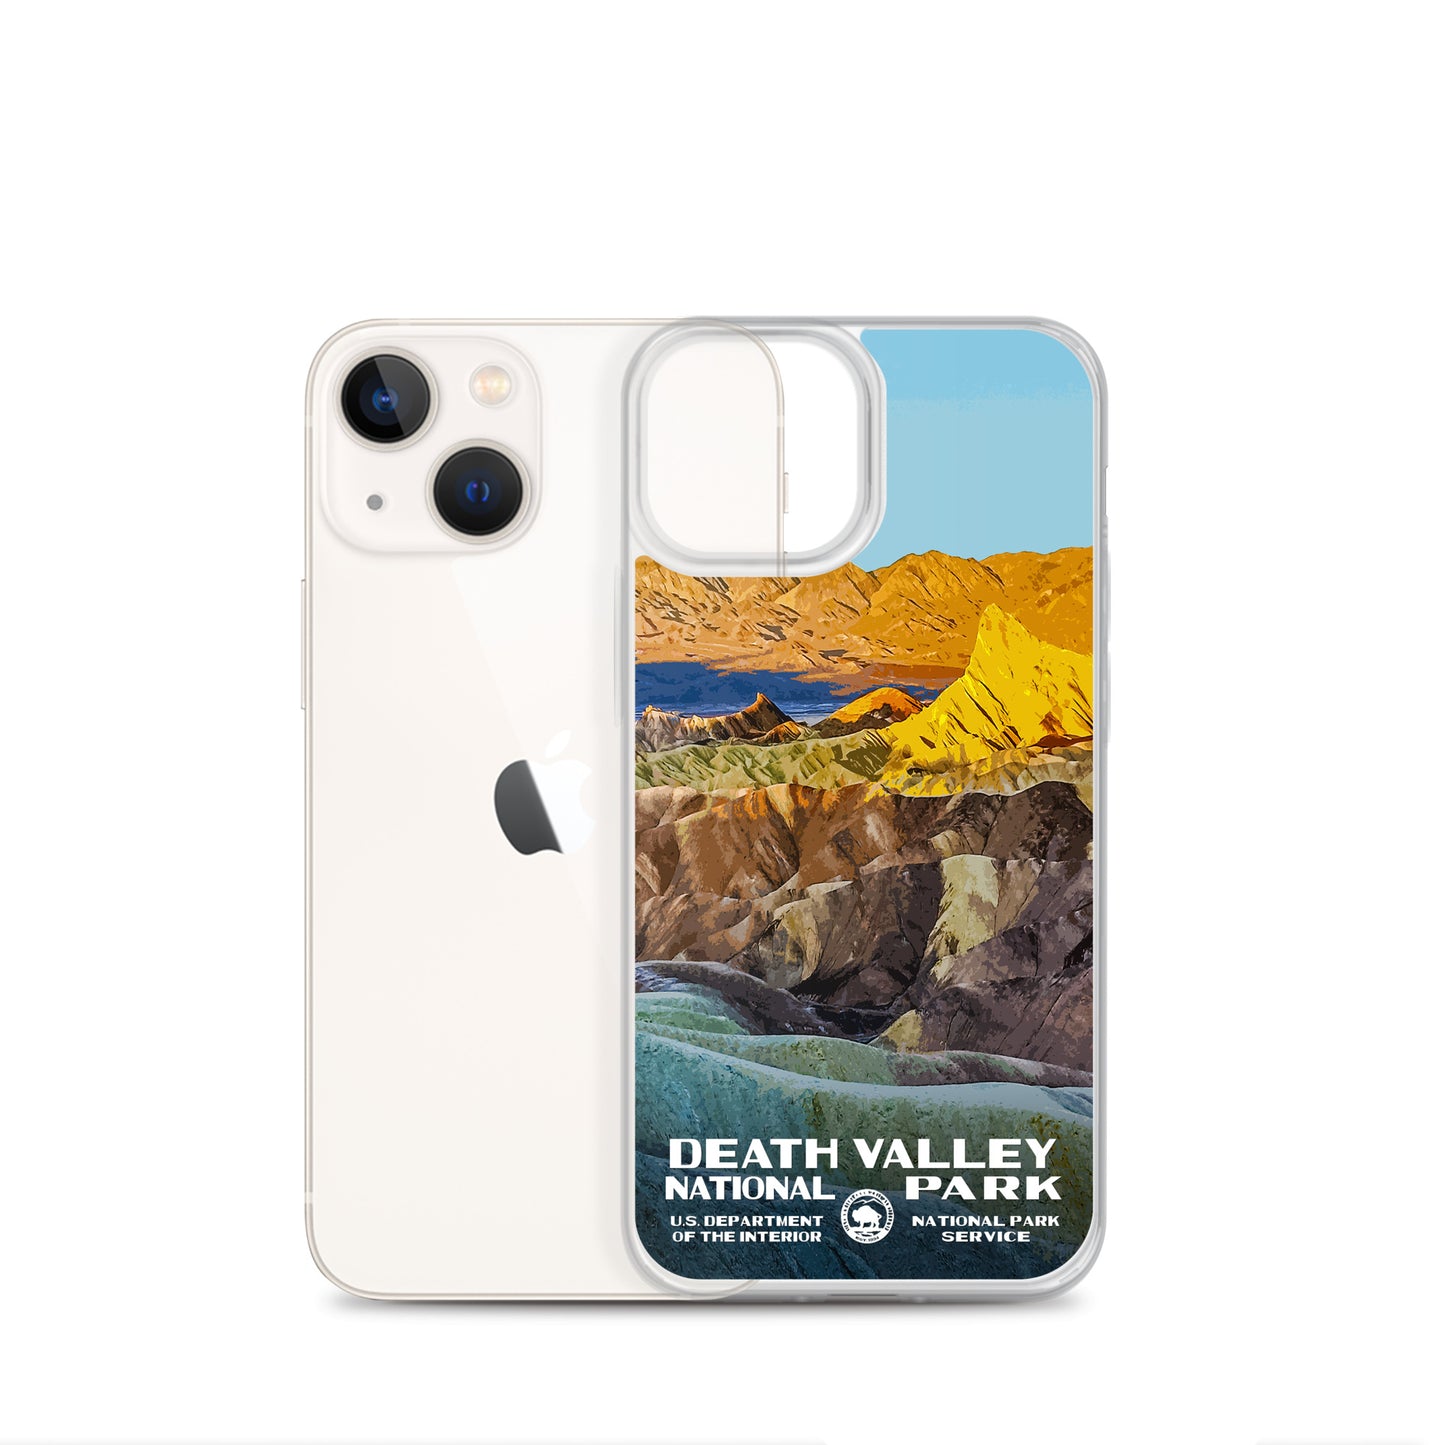 Death Valley National Park (Zabriskie Point) iPhone® Case